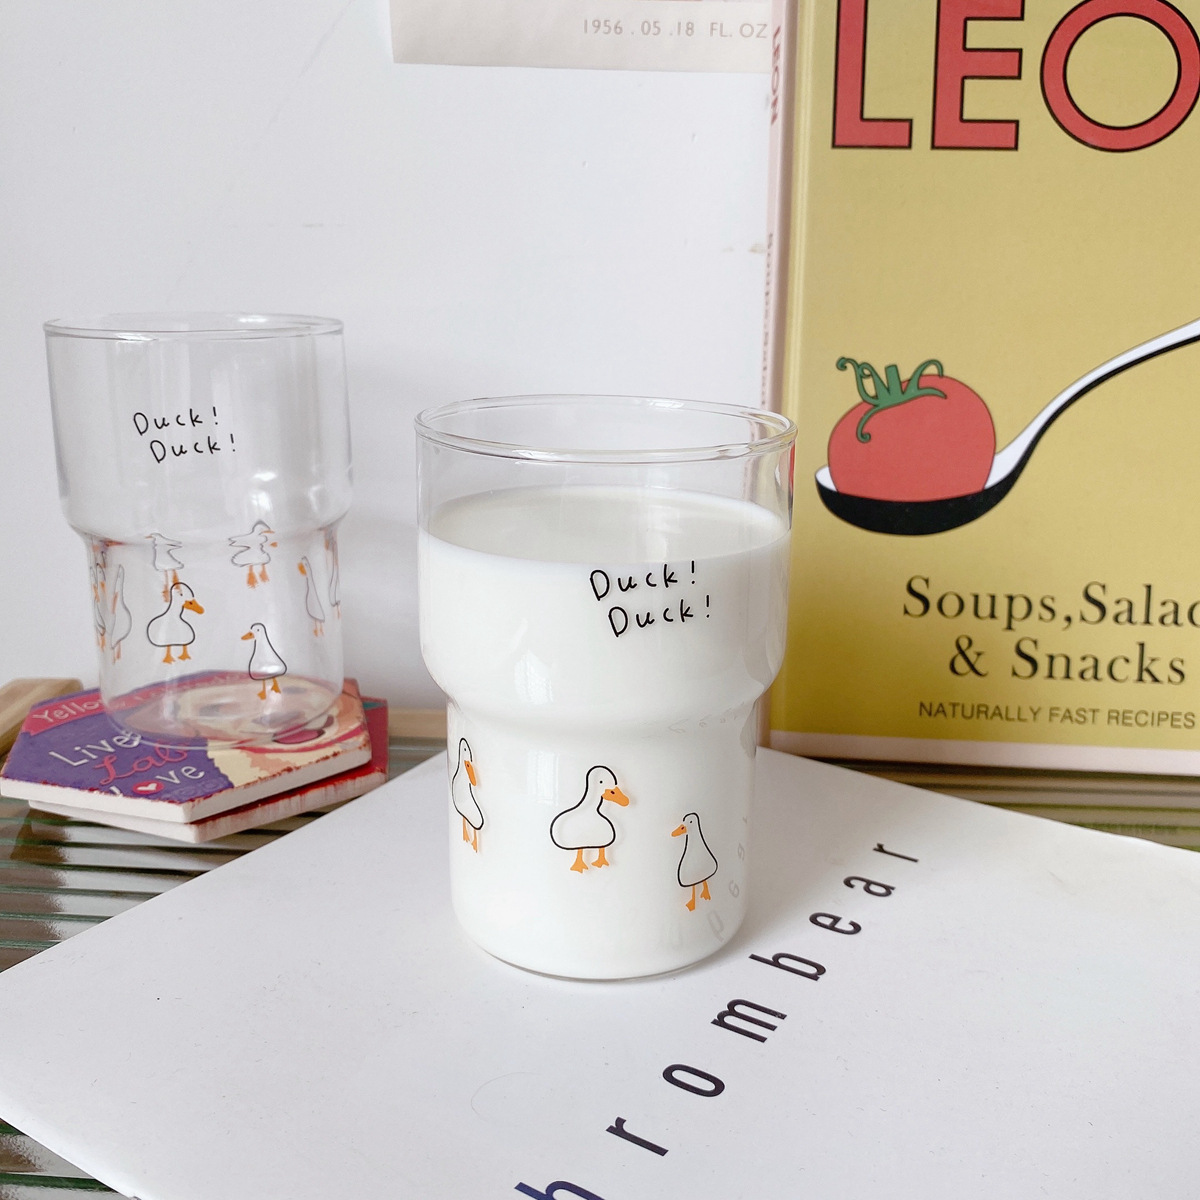 可爱加油鸭耐热玻璃杯早餐牛奶杯子卡通水杯果汁杯透明创意可叠放